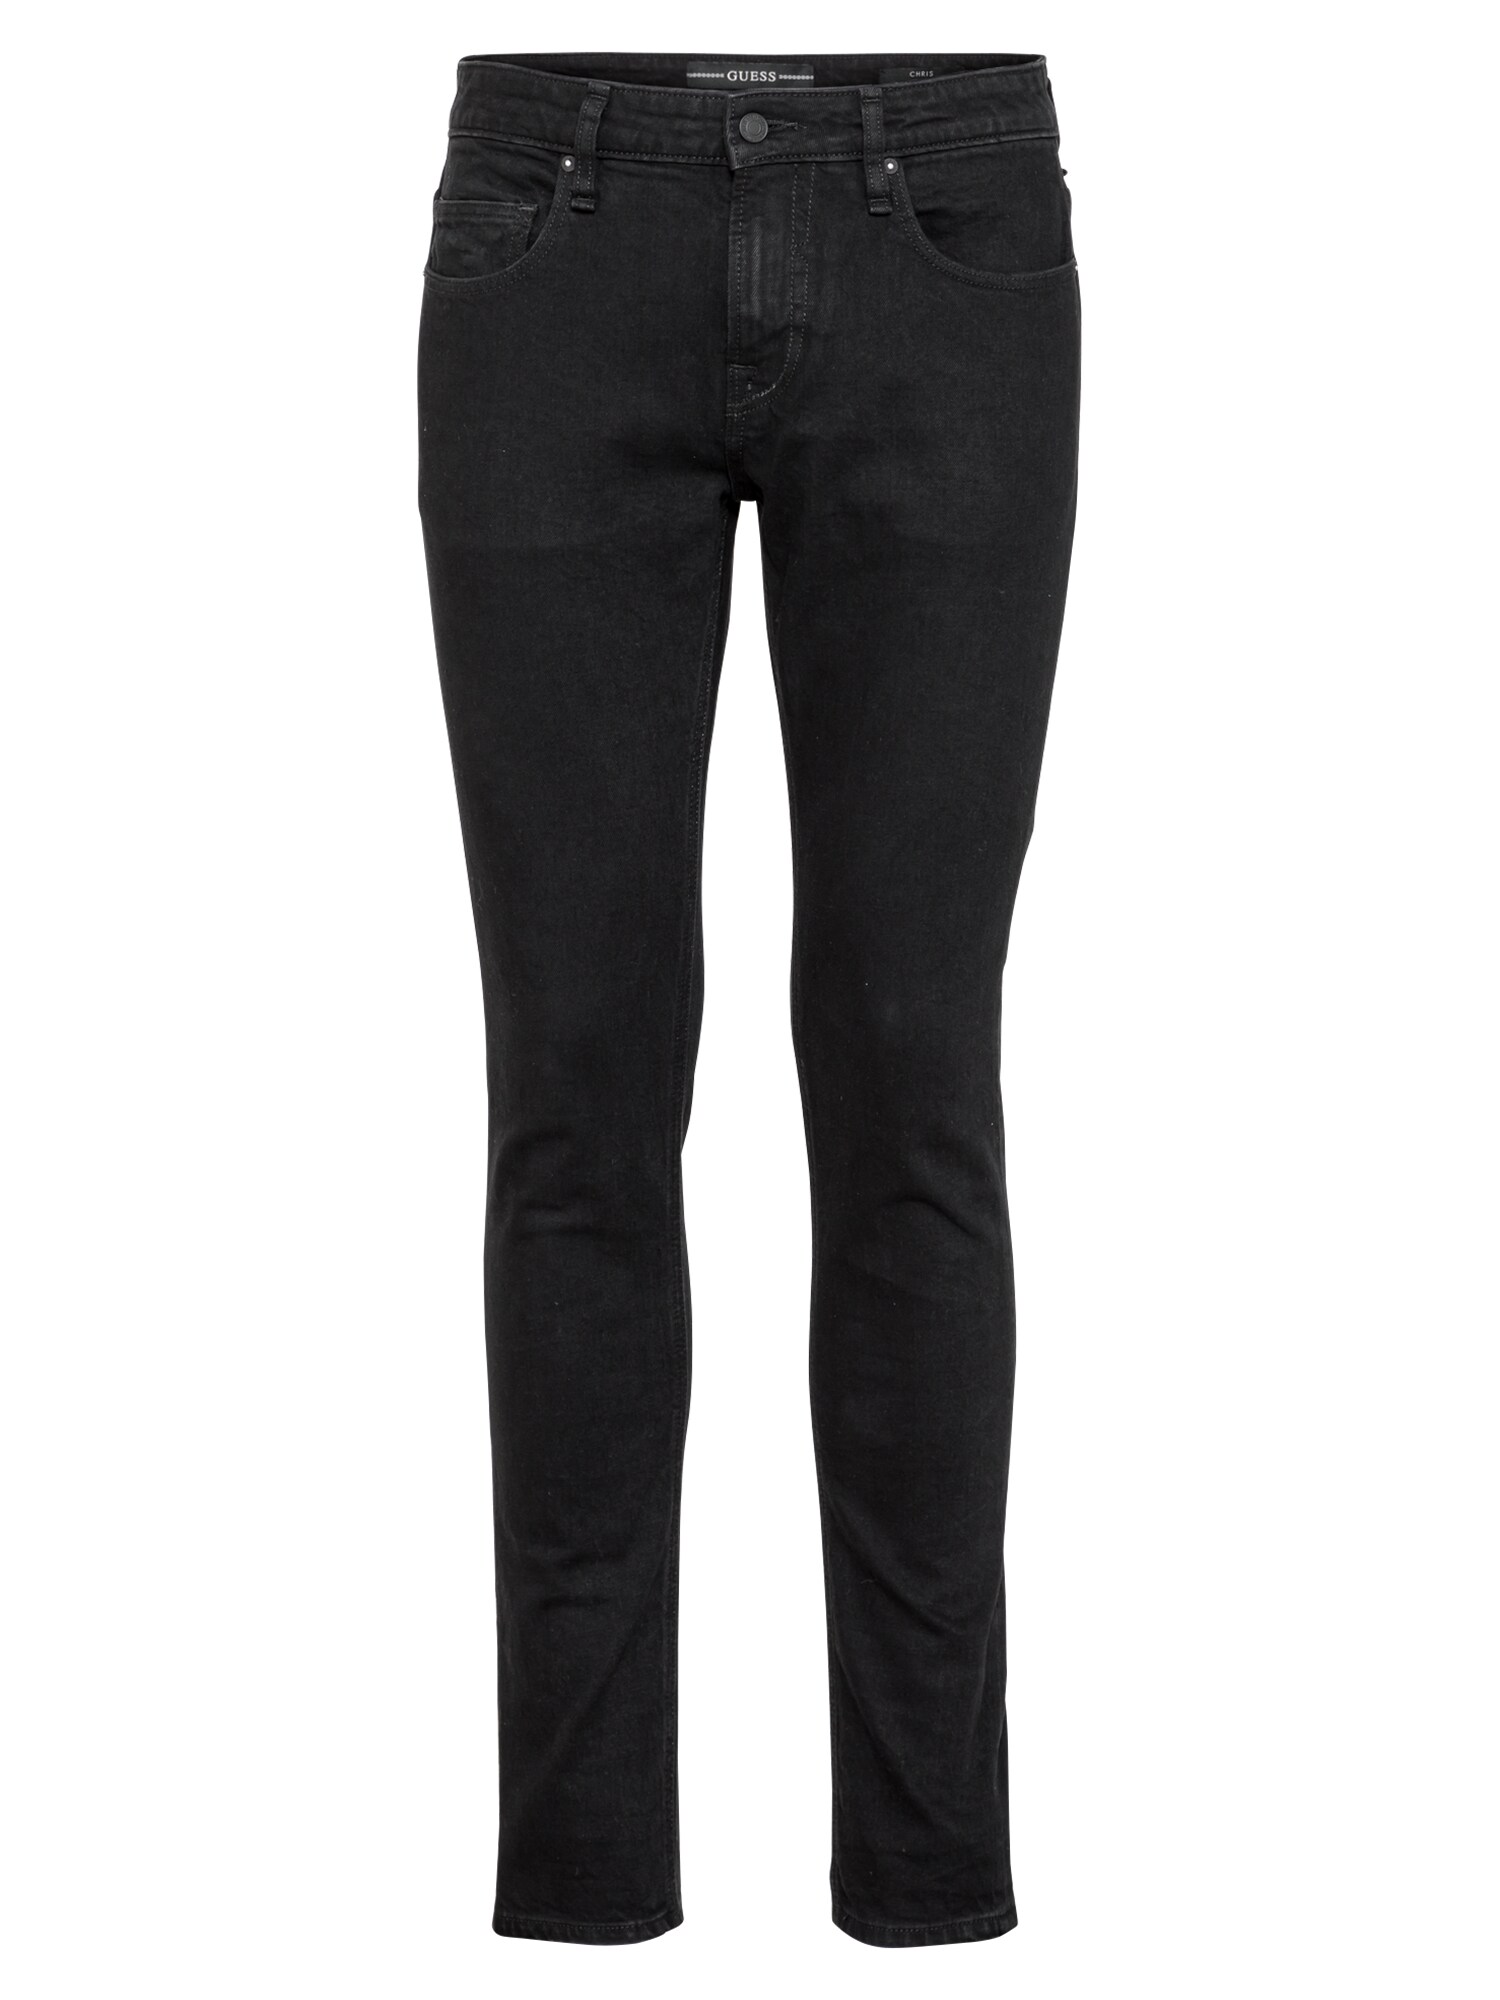 GUESS Džinsai 'CHRIS'  juodo džinso spalva